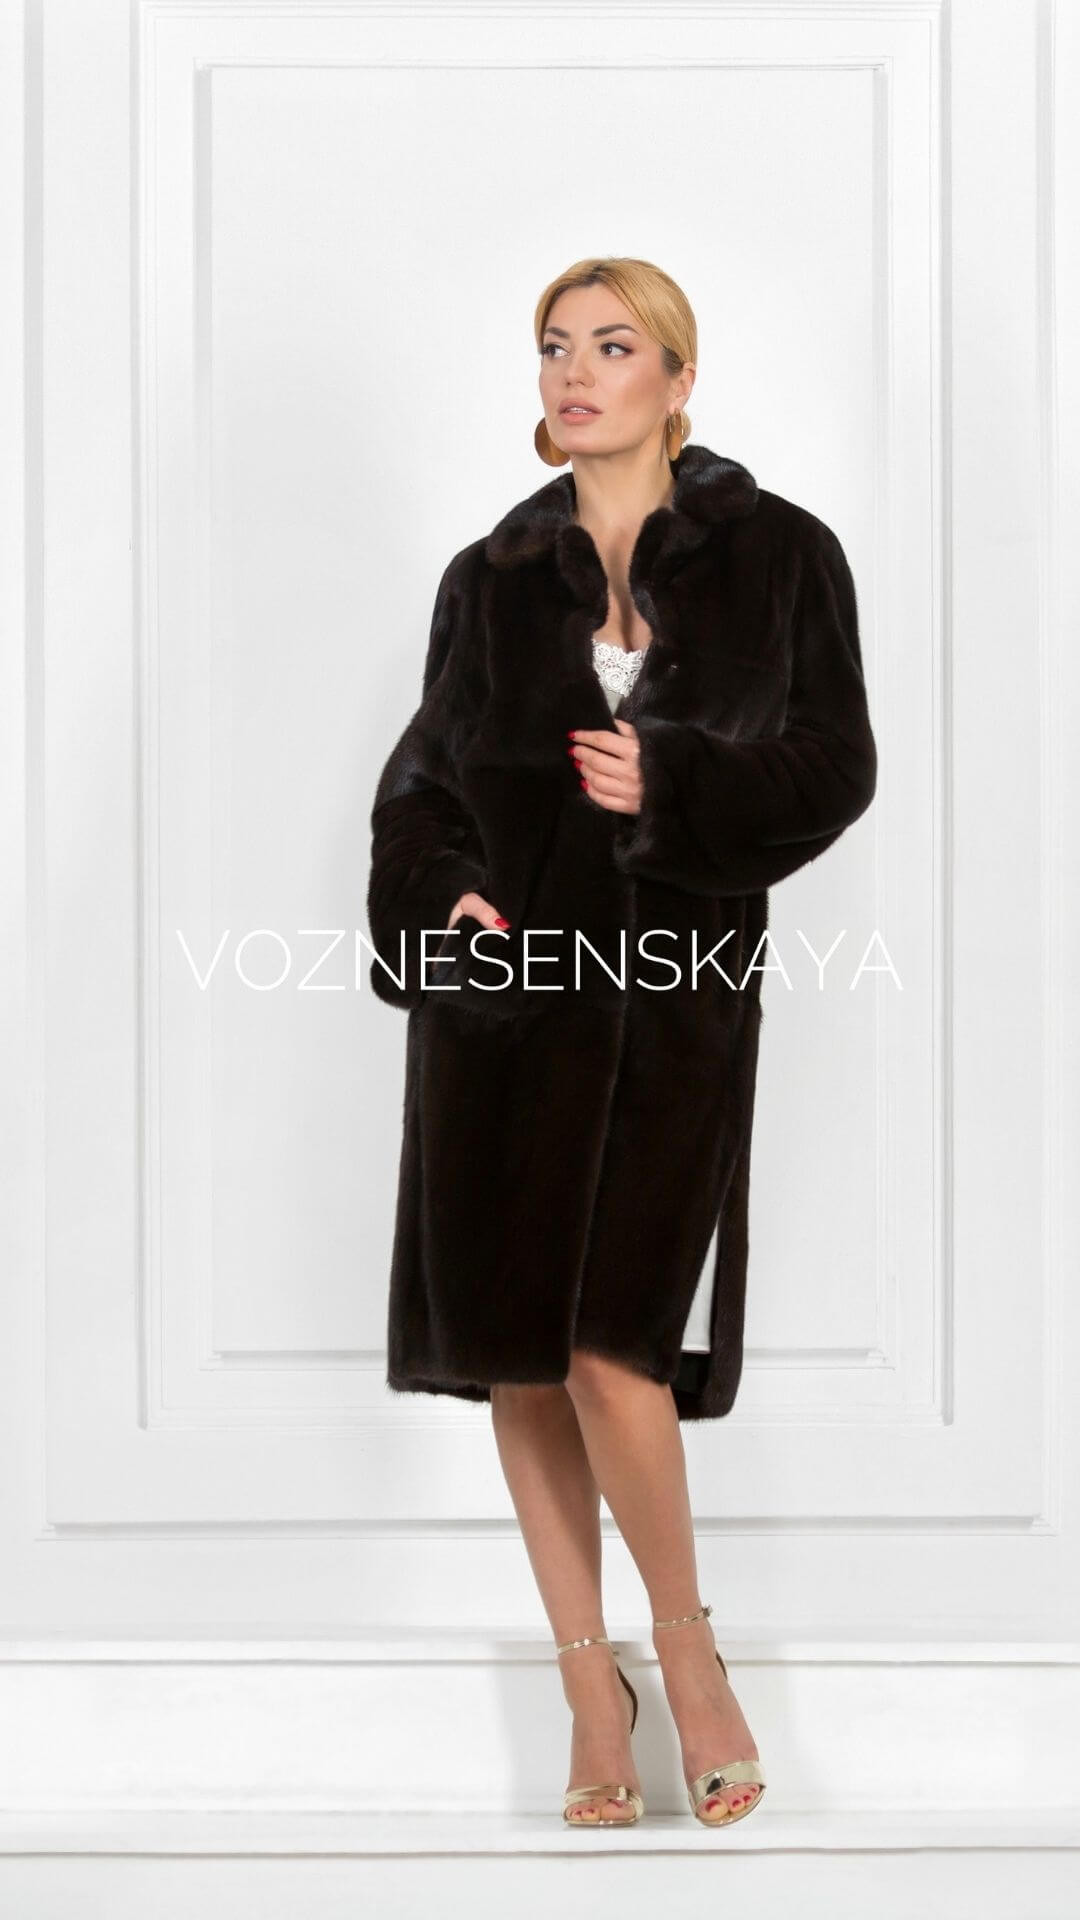 Should I alter a mink coat?